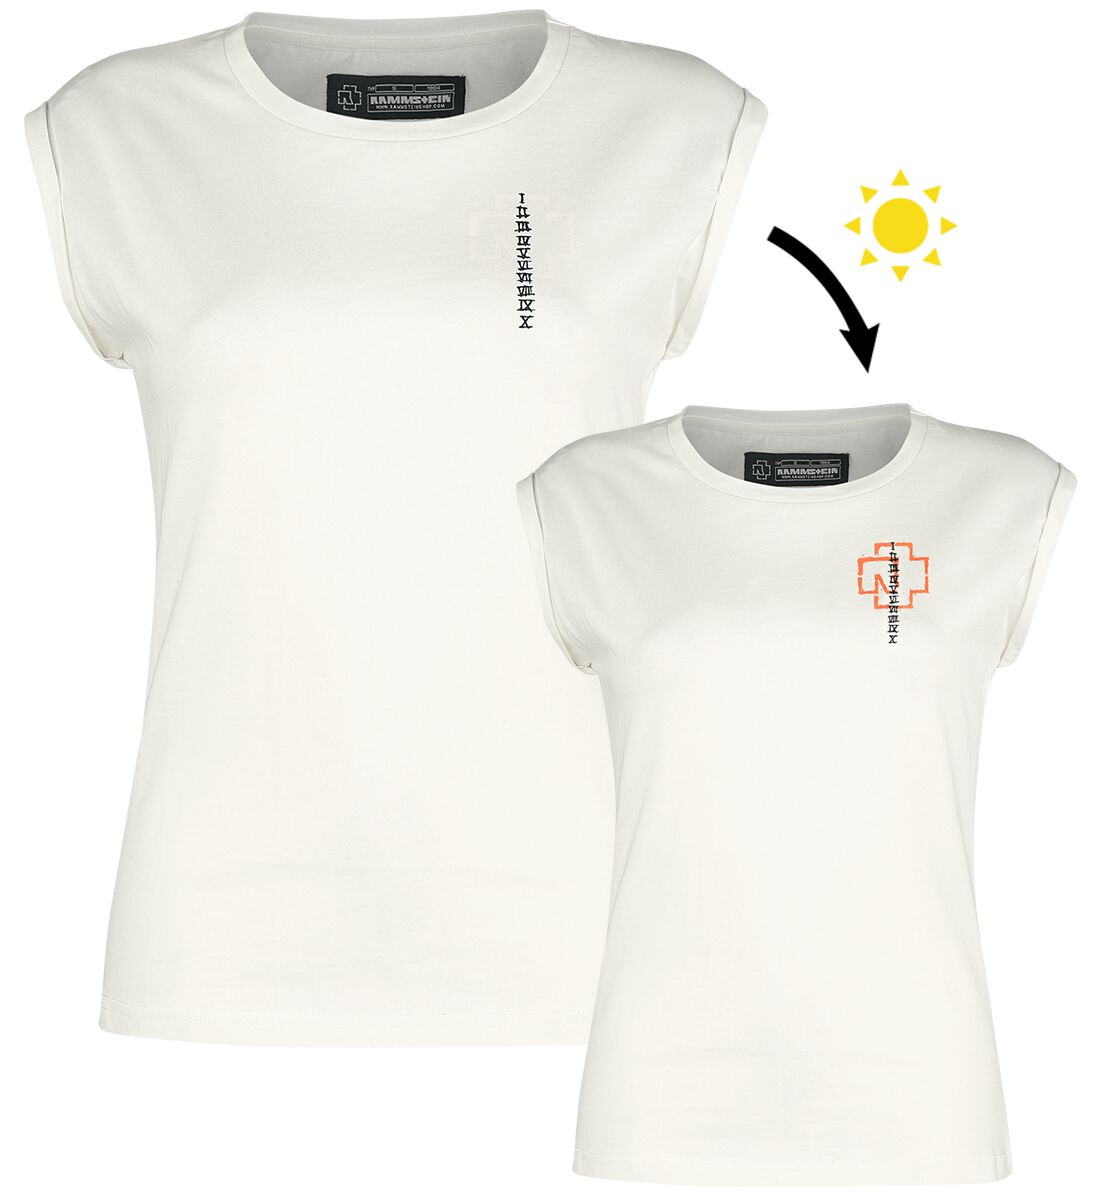 Rammstein - Sonne - T-Shirt - weiß